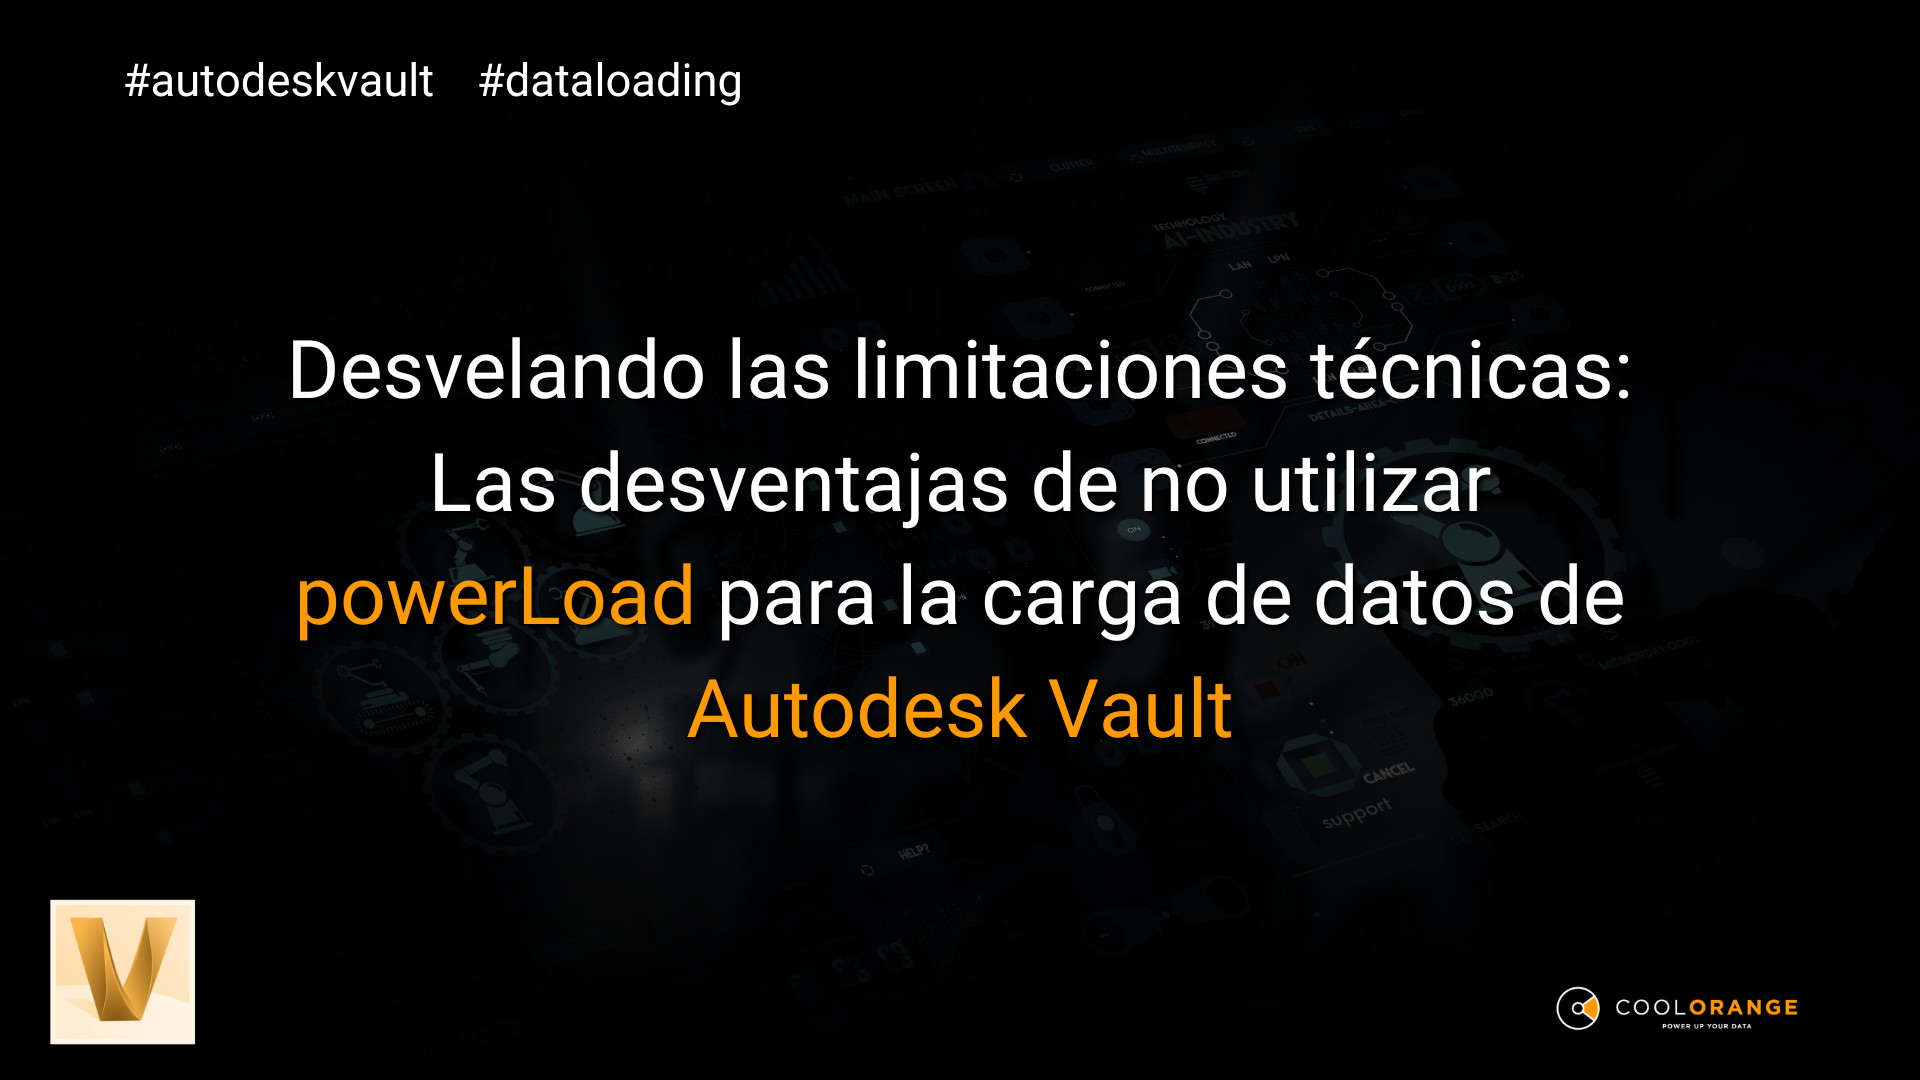 Desvelando las limitaciones técnicas: Las desventajas de no utilizar powerLoad para la carga de datos de Autodesk Vault